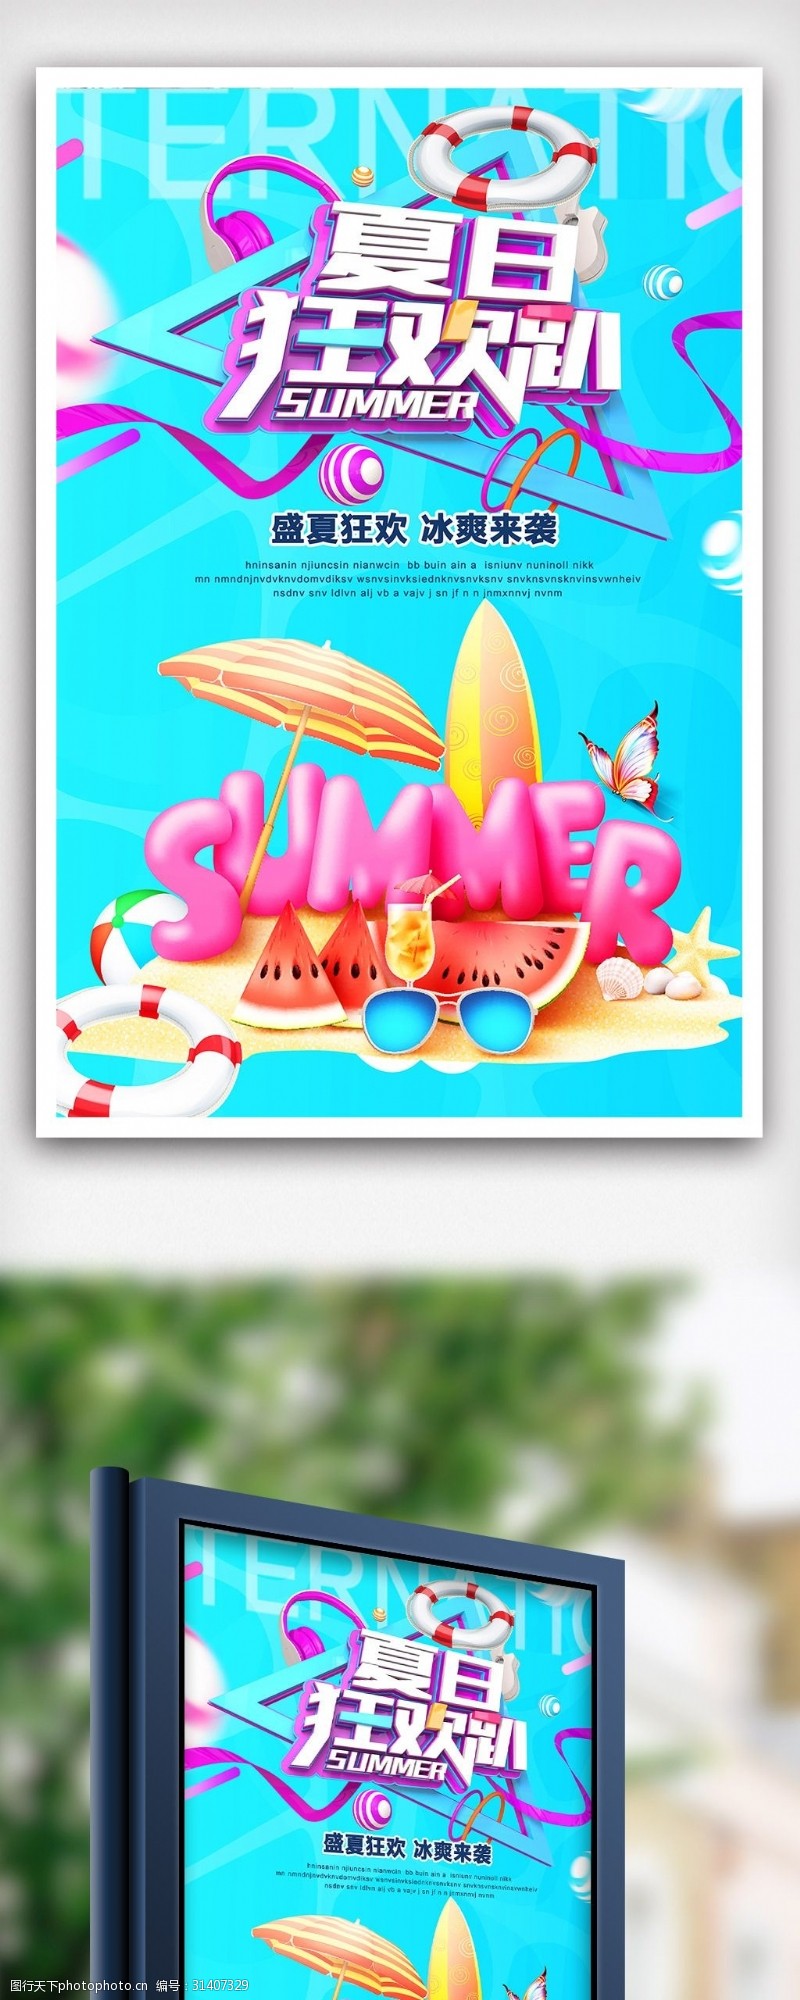 私人泳池简洁大气夏日狂欢促销海报